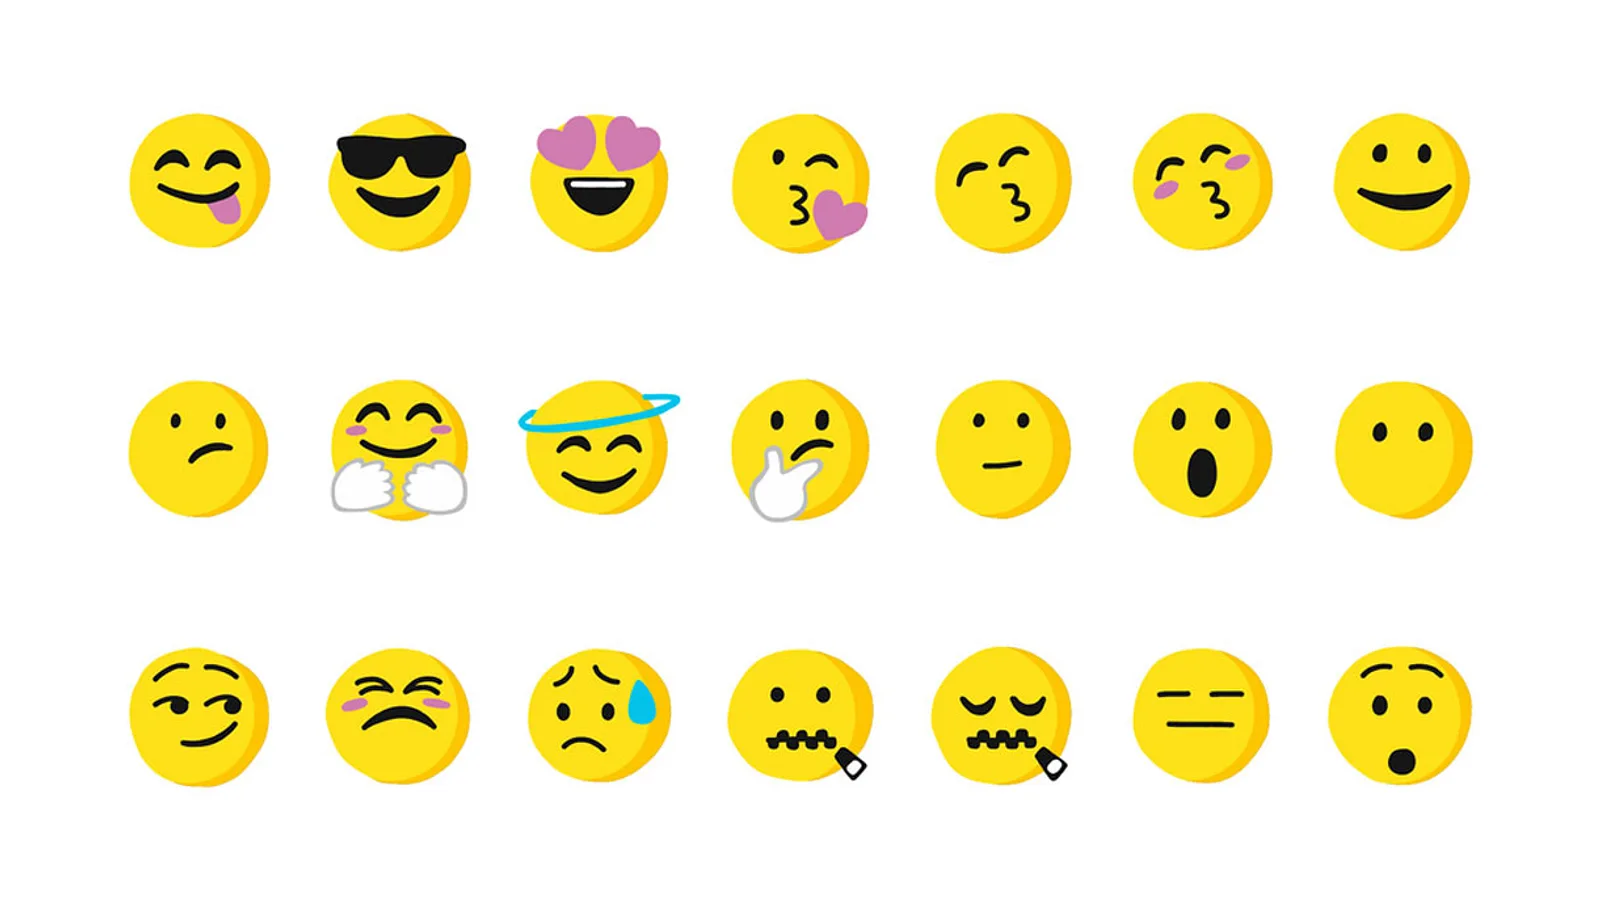 Emojis bedeutung smiley mit herzen